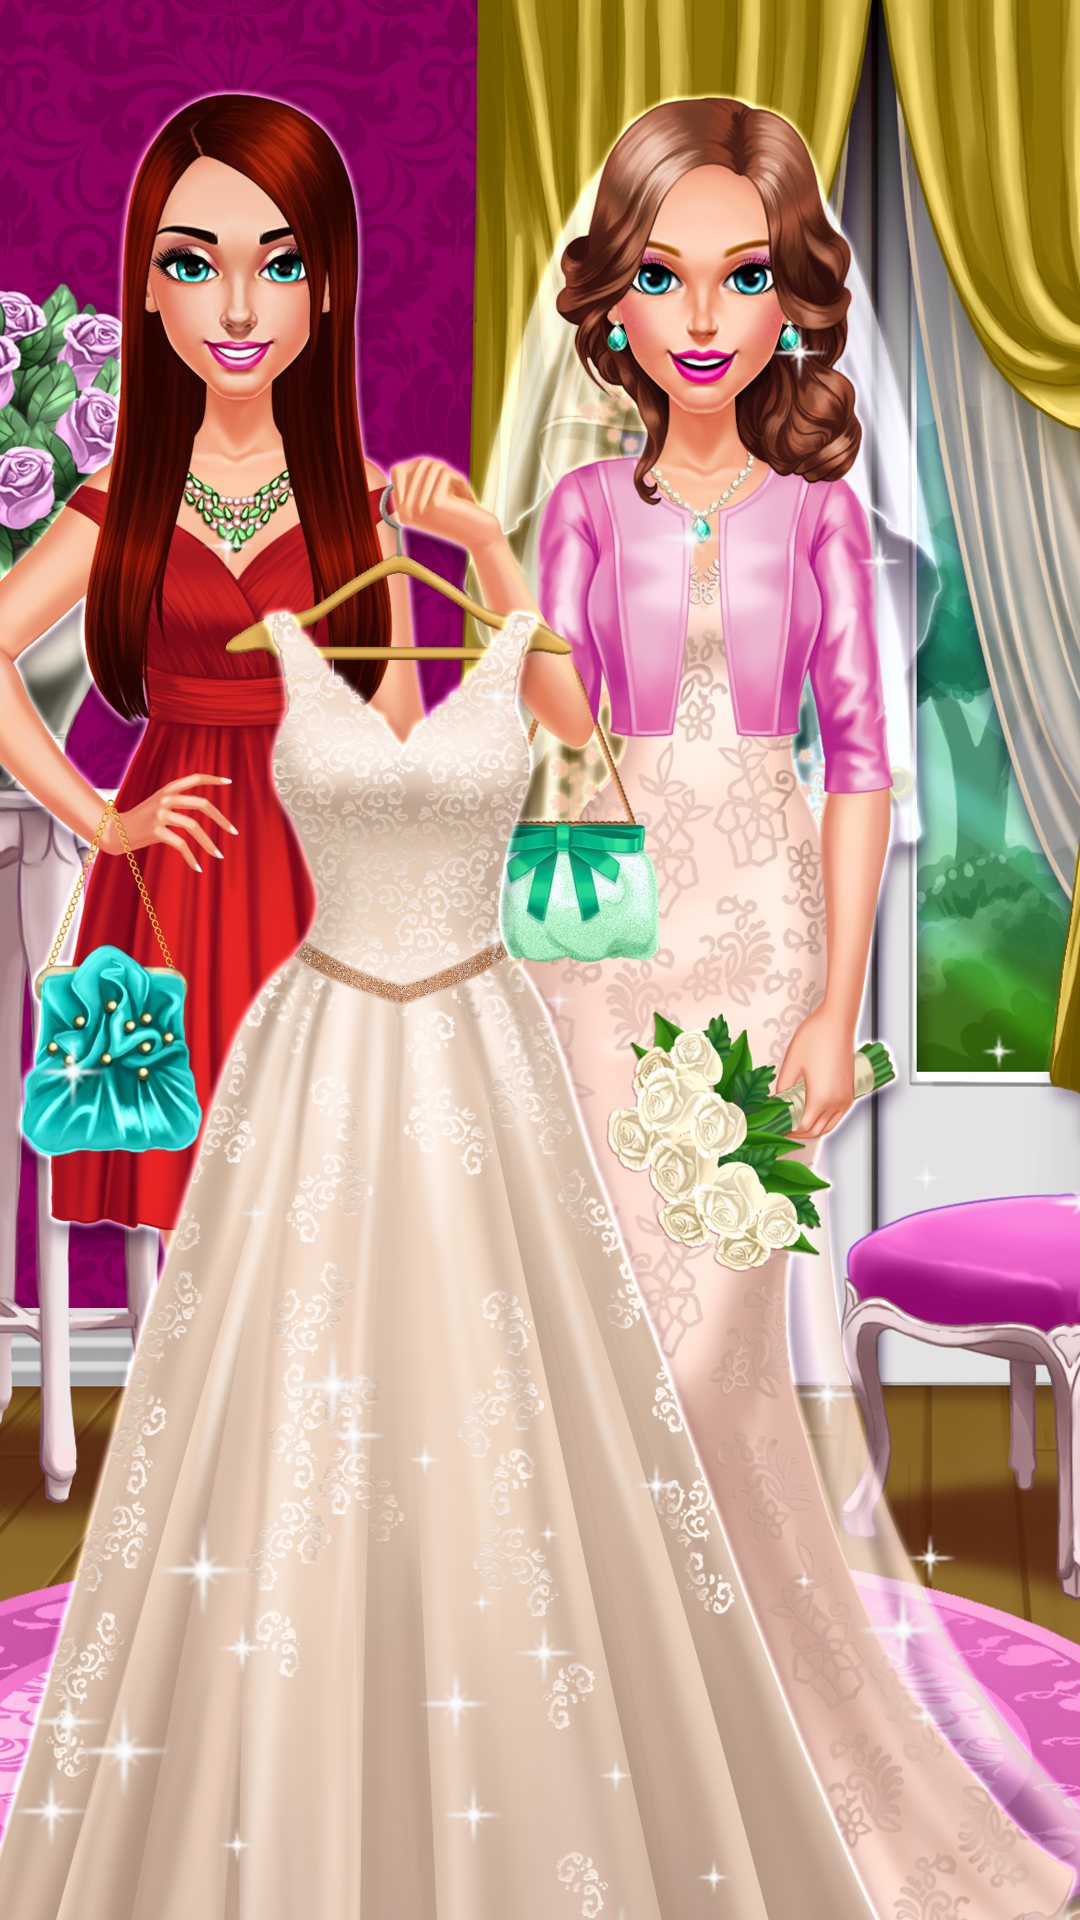 Screenshot 1 of दुल्हन और दुल्हन की सहेलियों की शादी 1.0.3